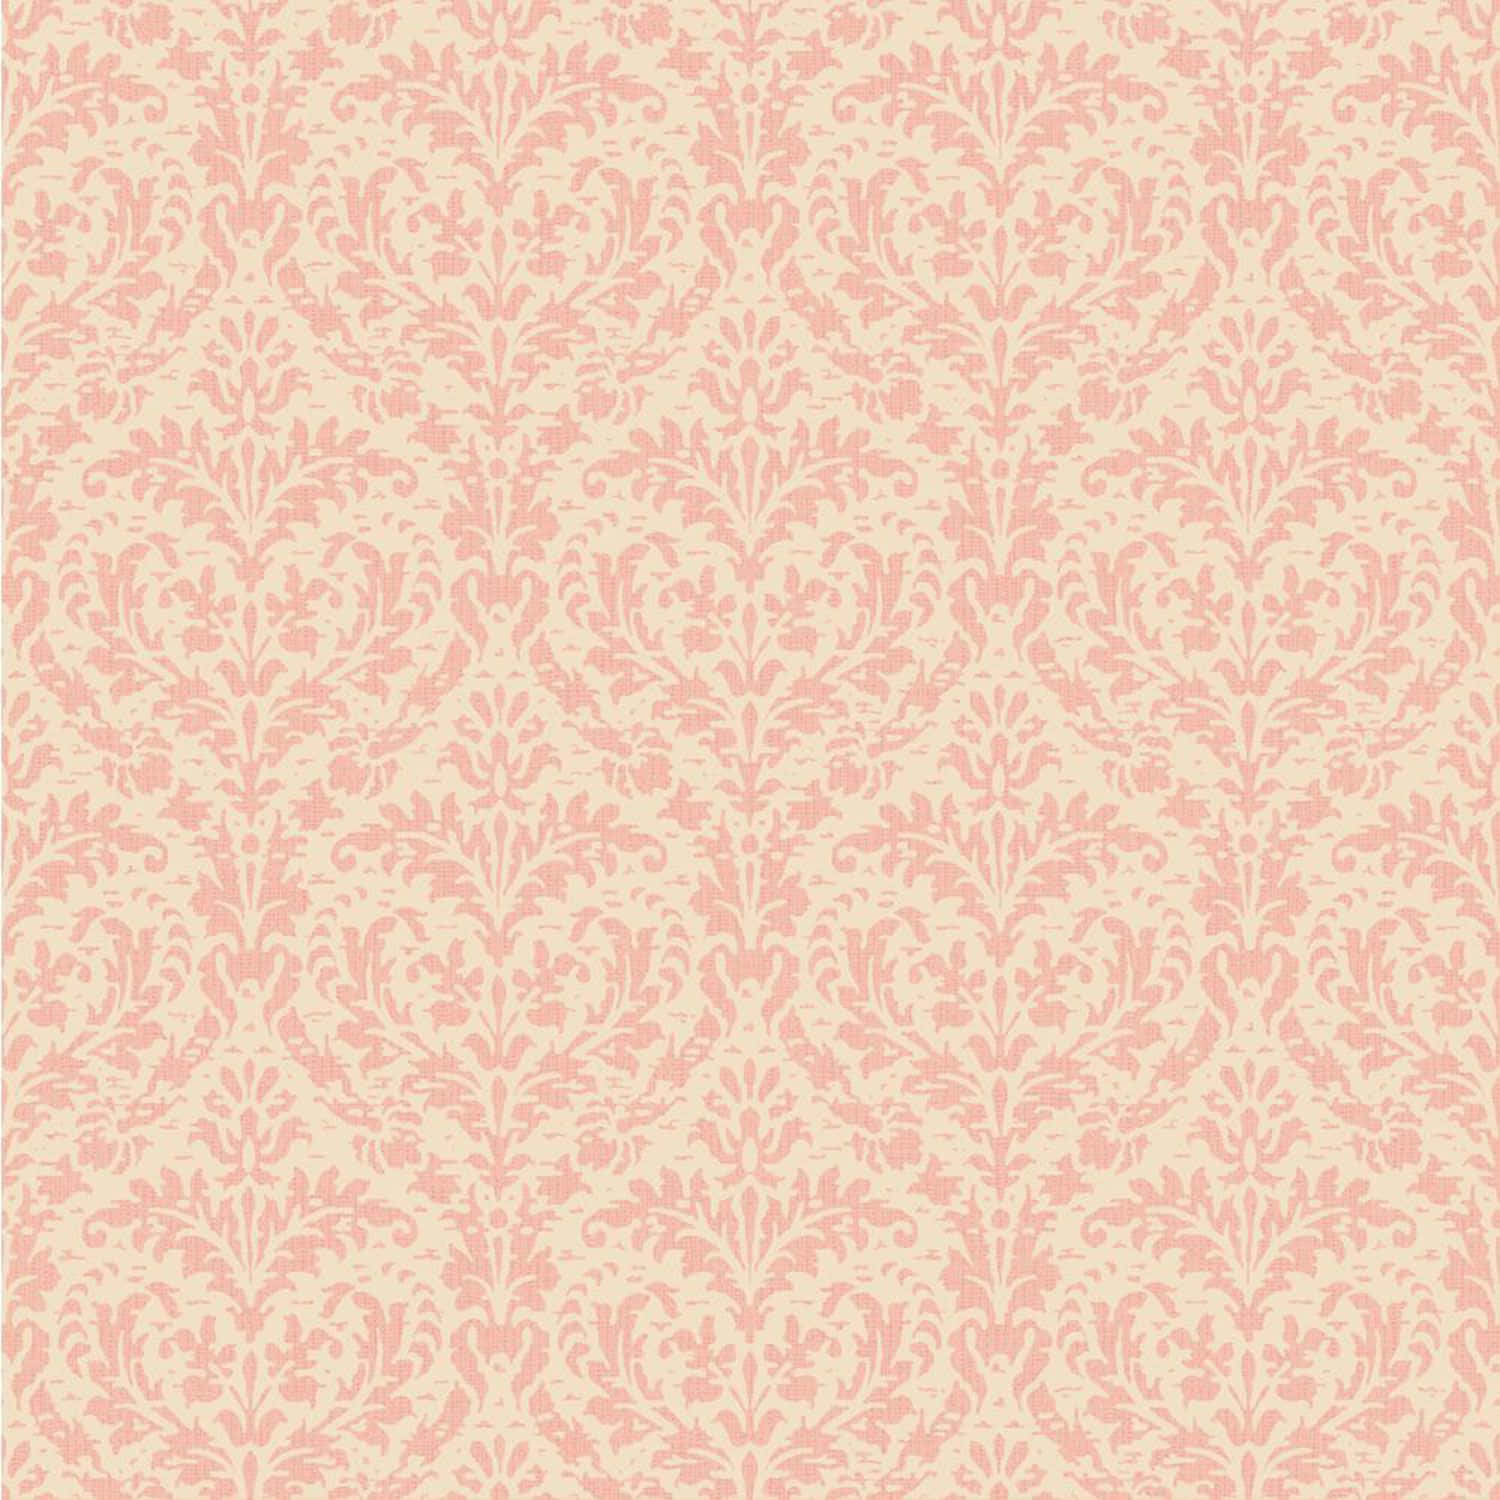 Blush Pink Damask Pattern Wallpaper